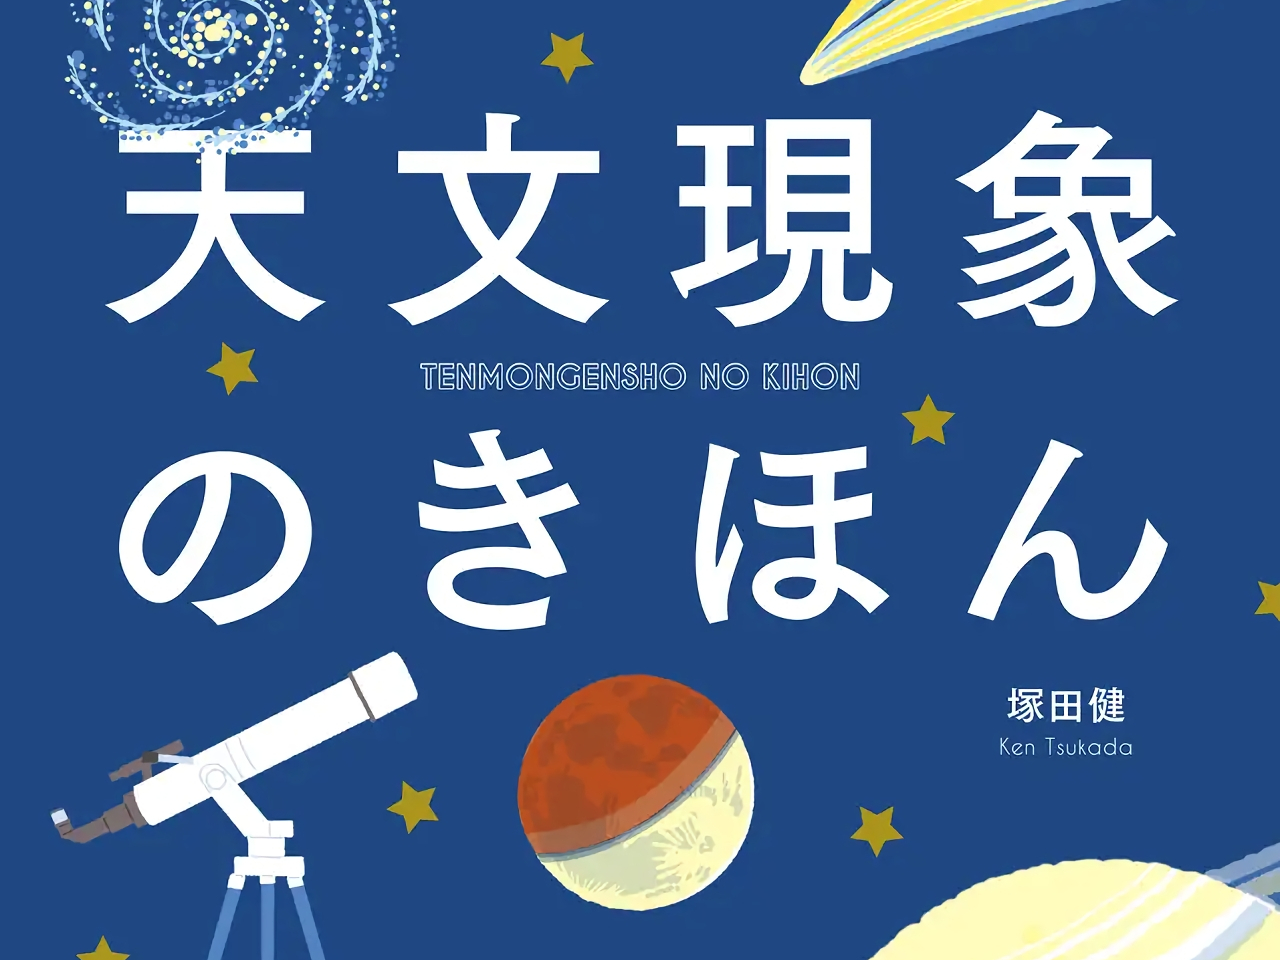 誠文堂新光社、「天文現象のきほん」を8月12日に発売--楽しみ方などを解説